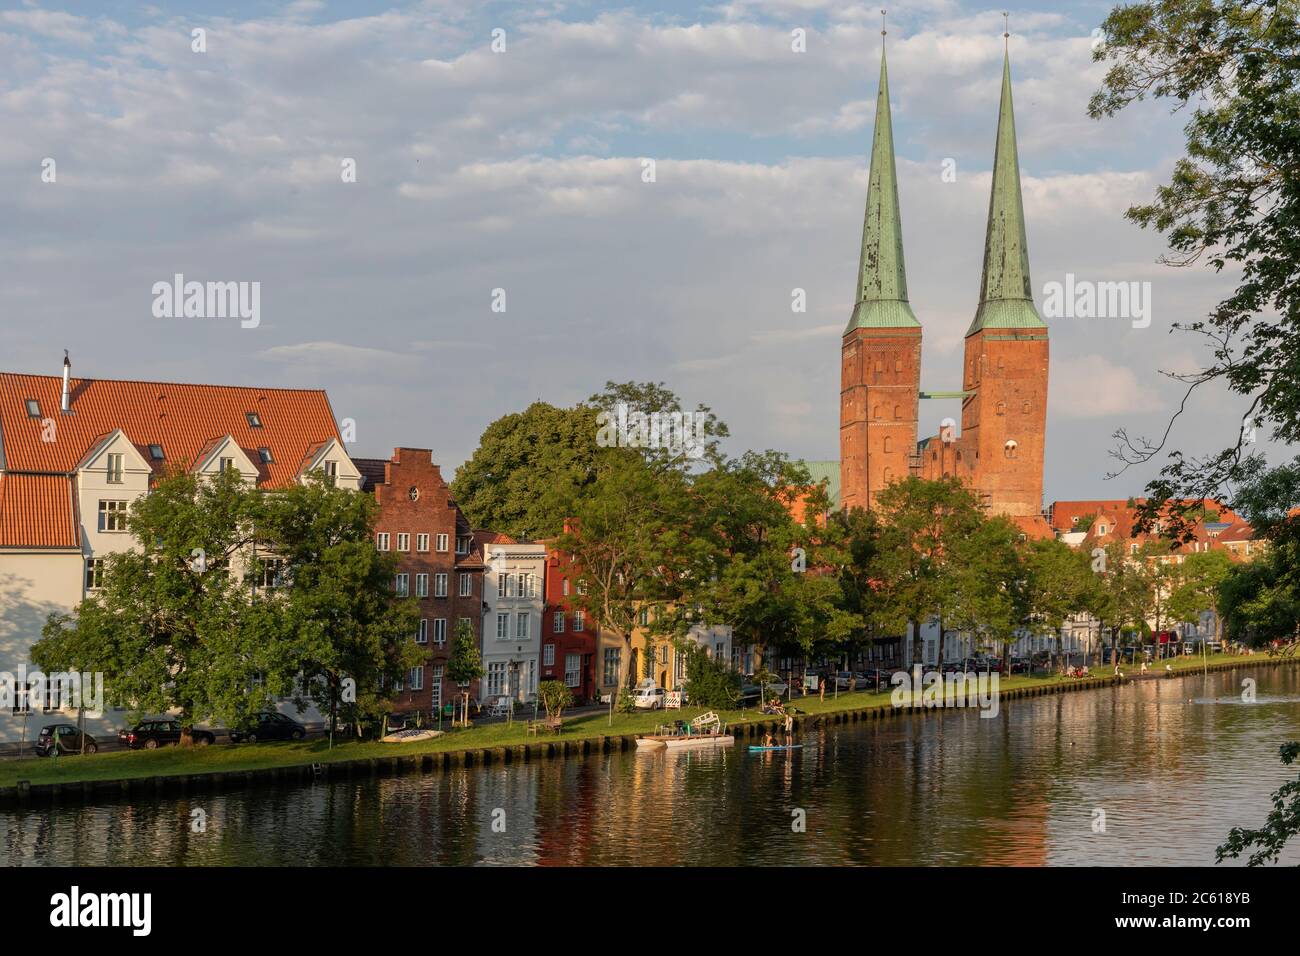 Vue sur la vieille île de la ville hanséatique de Luebeck avec la rivière Trave et la cathédrale de Luebeck Banque D'Images